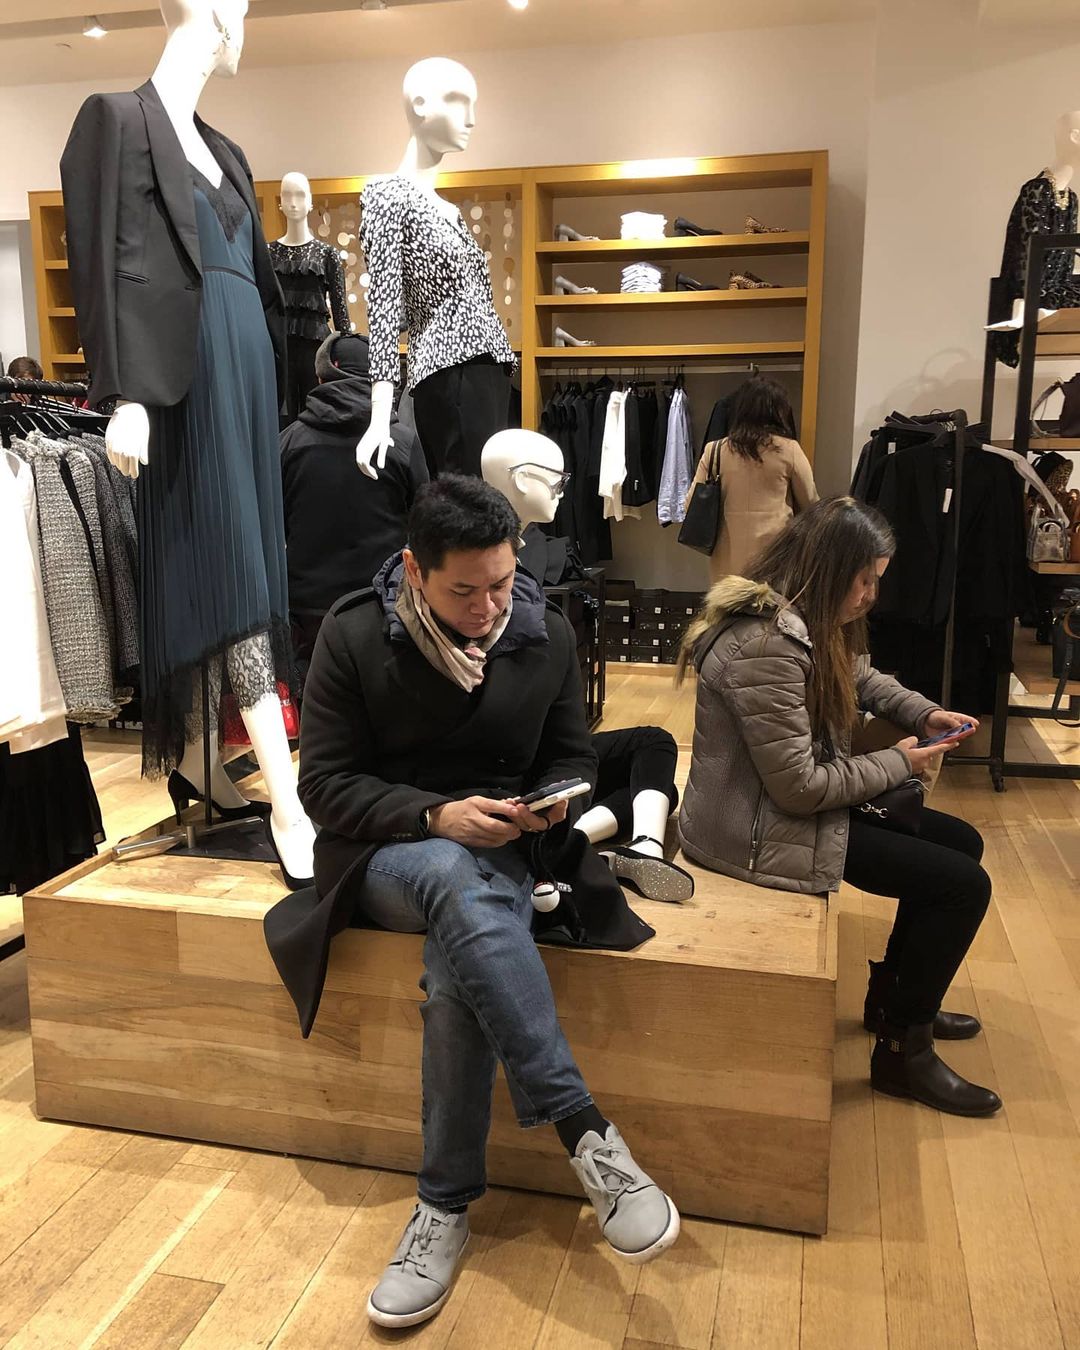 Испытания для мужчин, ждущих своих жен во время шопинга